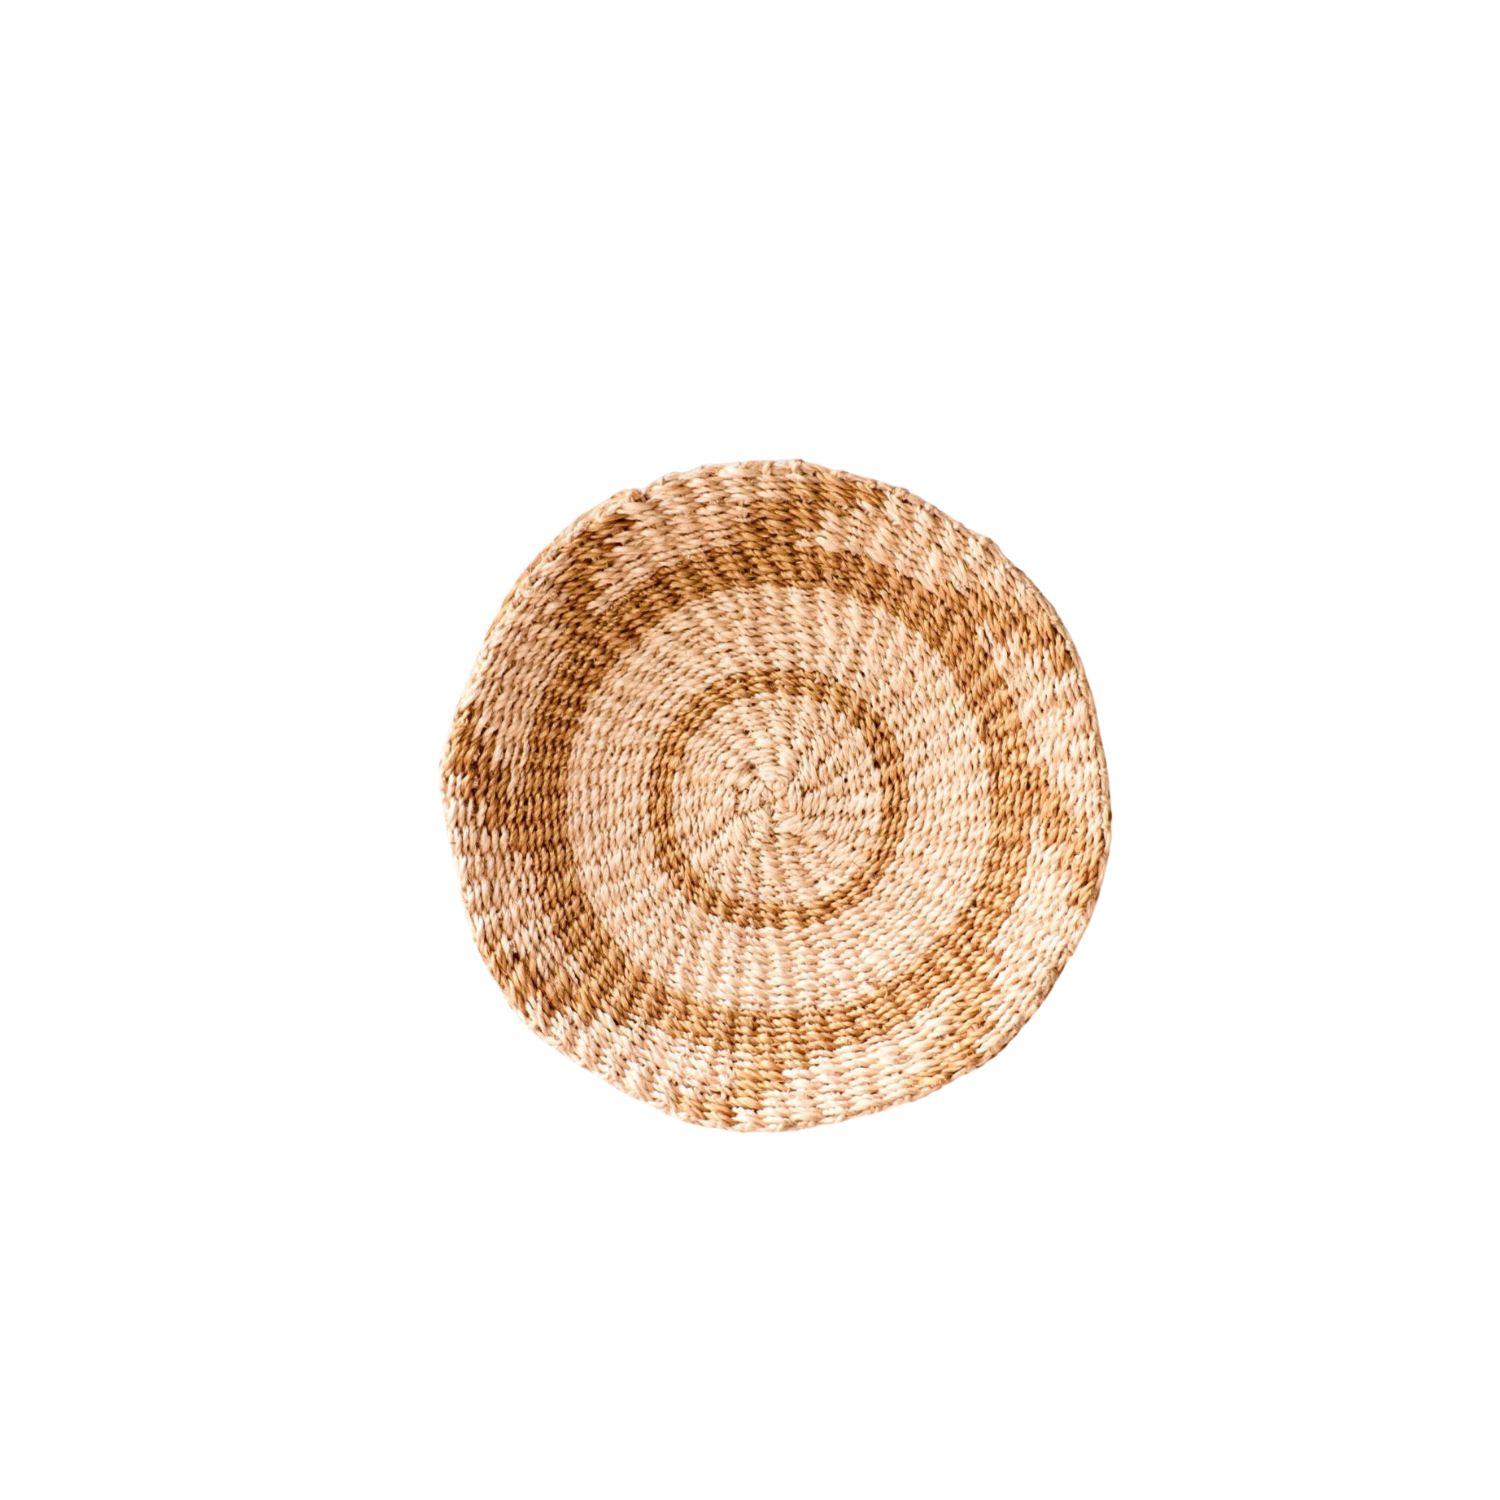 Likha Brown / Neutrals Small Natural & Brown Wall Baskets